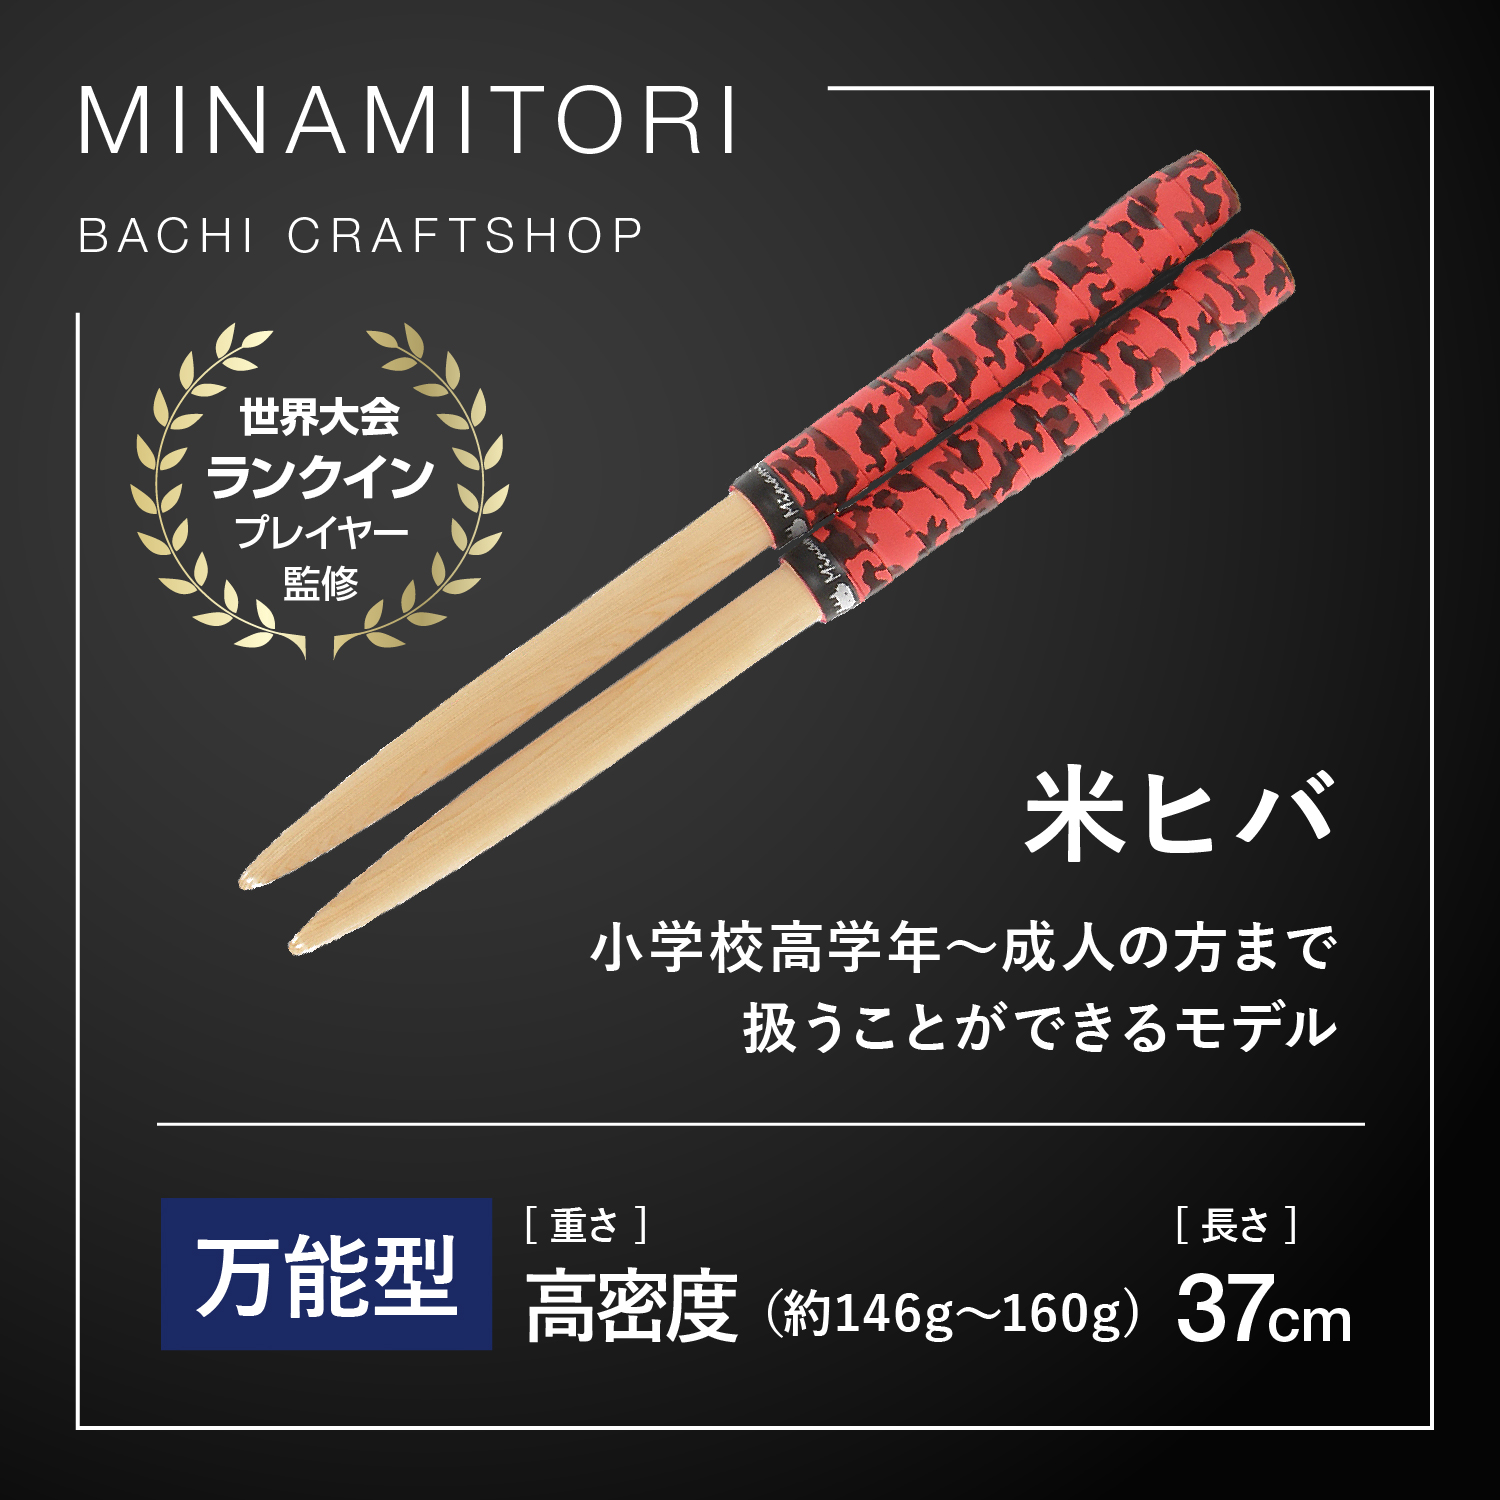 Minamitoriバチ工房 マイバチ 米ヒバ 37cm 重さ:高密度 精度型（迷彩 